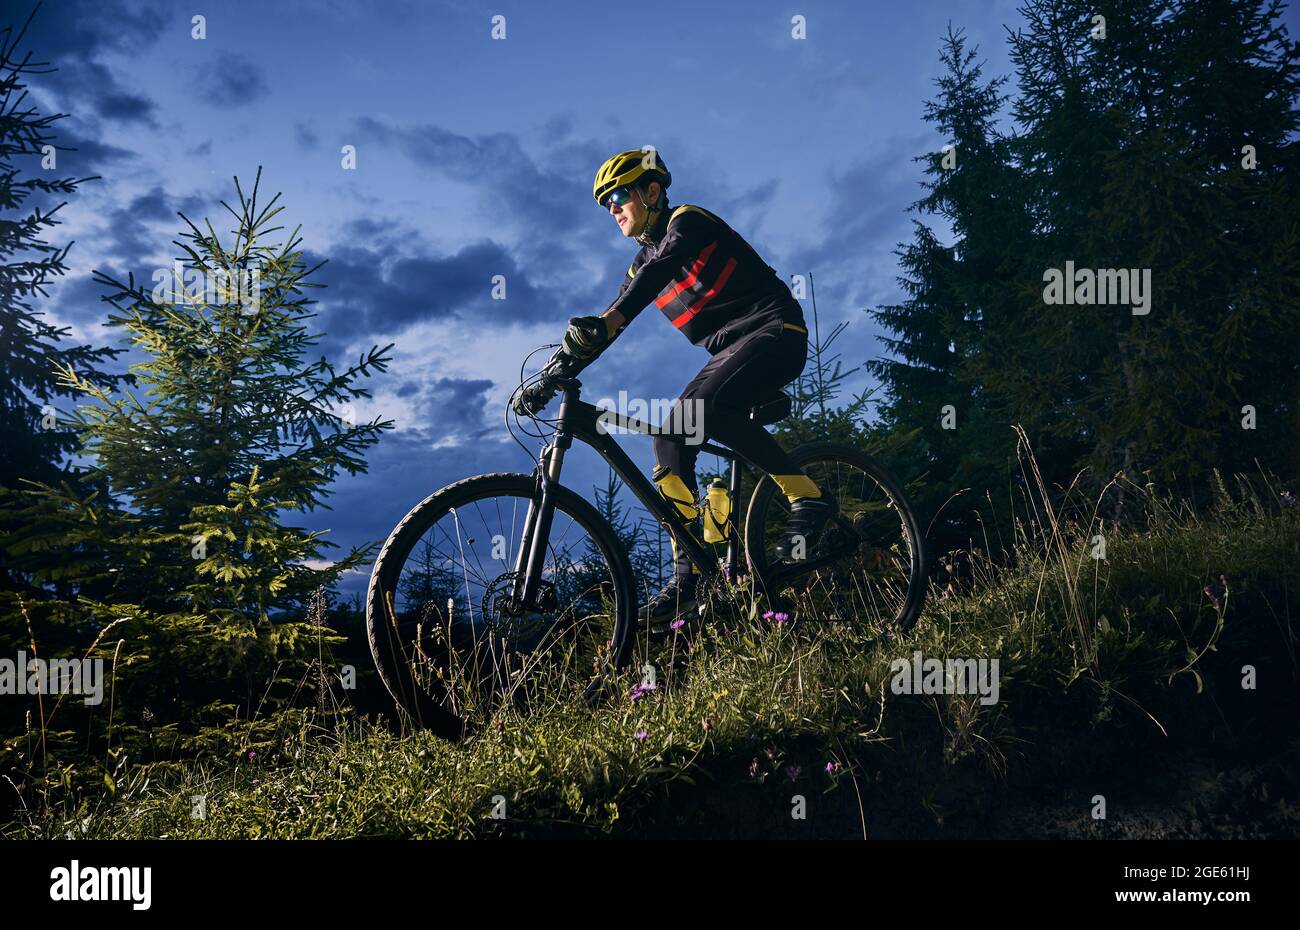 Junger Mann fährt Fahrrad bergab mit schönen blauen Abendhimmel auf dem Hintergrund. Männlicher Radfahrer im Sportfahranzug, der nachts den grasbewachsenen Hügel hinunterradelt. Konzept von Sport, Radfahren und aktiver Freizeit. Stockfoto